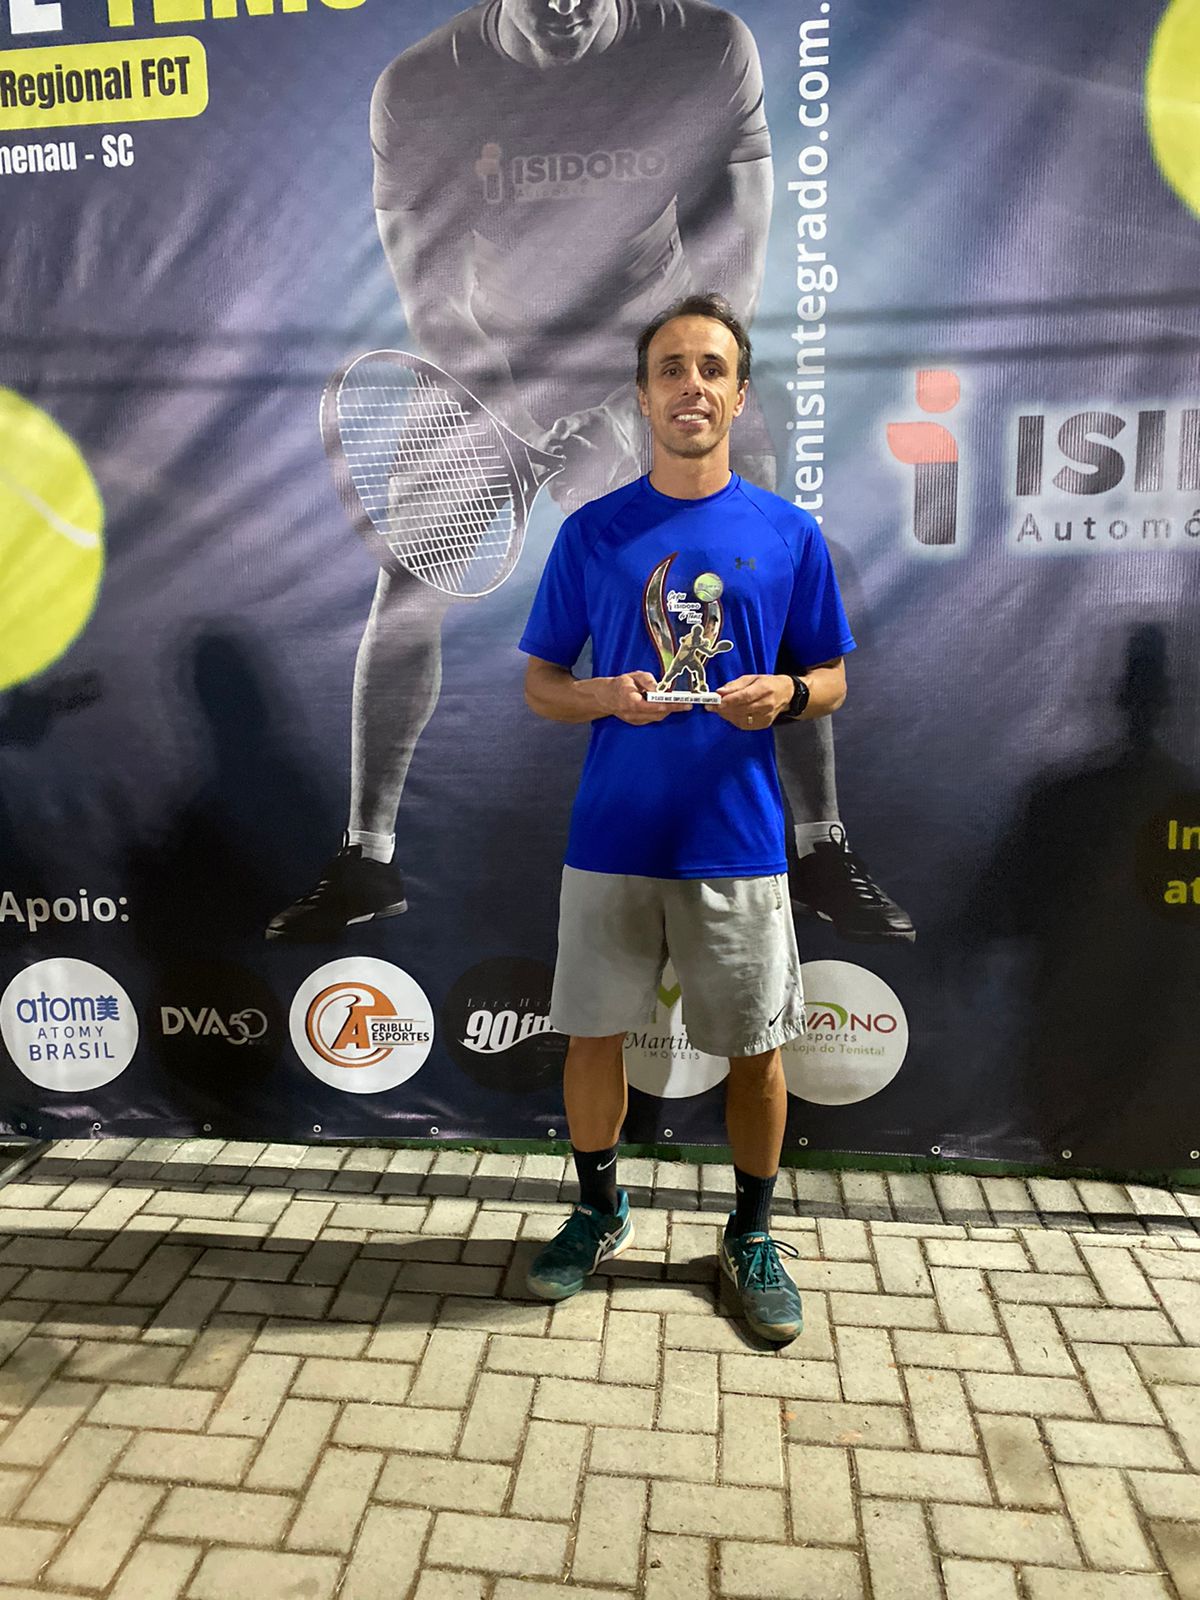 Tenistas do Bandeirante são campeões na terceira etapa do regional em Blumenau